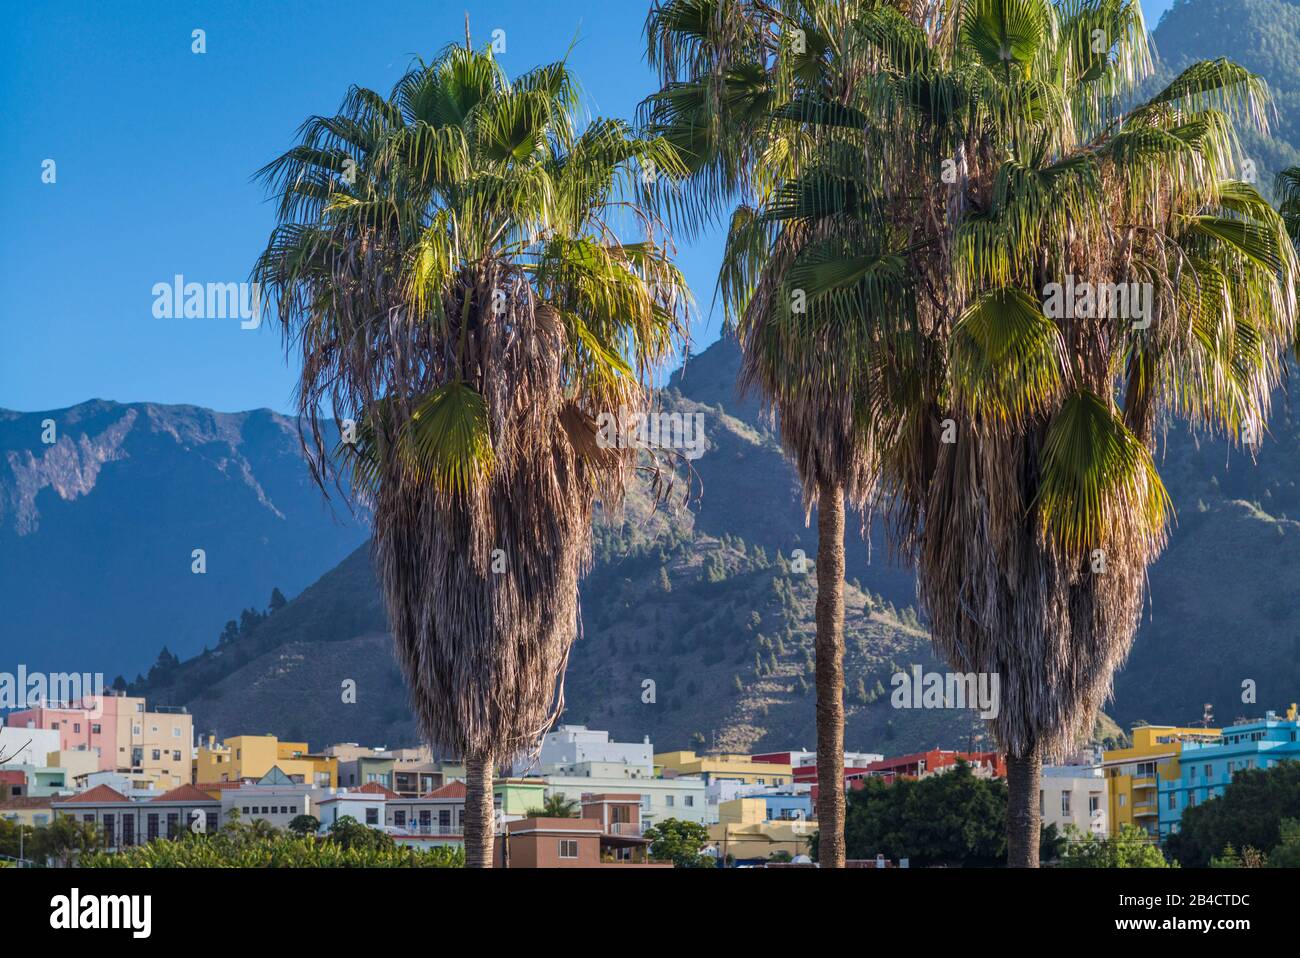 Spain, Canary Islands, La Palma Island, Los Llanos de Aridane, elevated city view Stock Photo